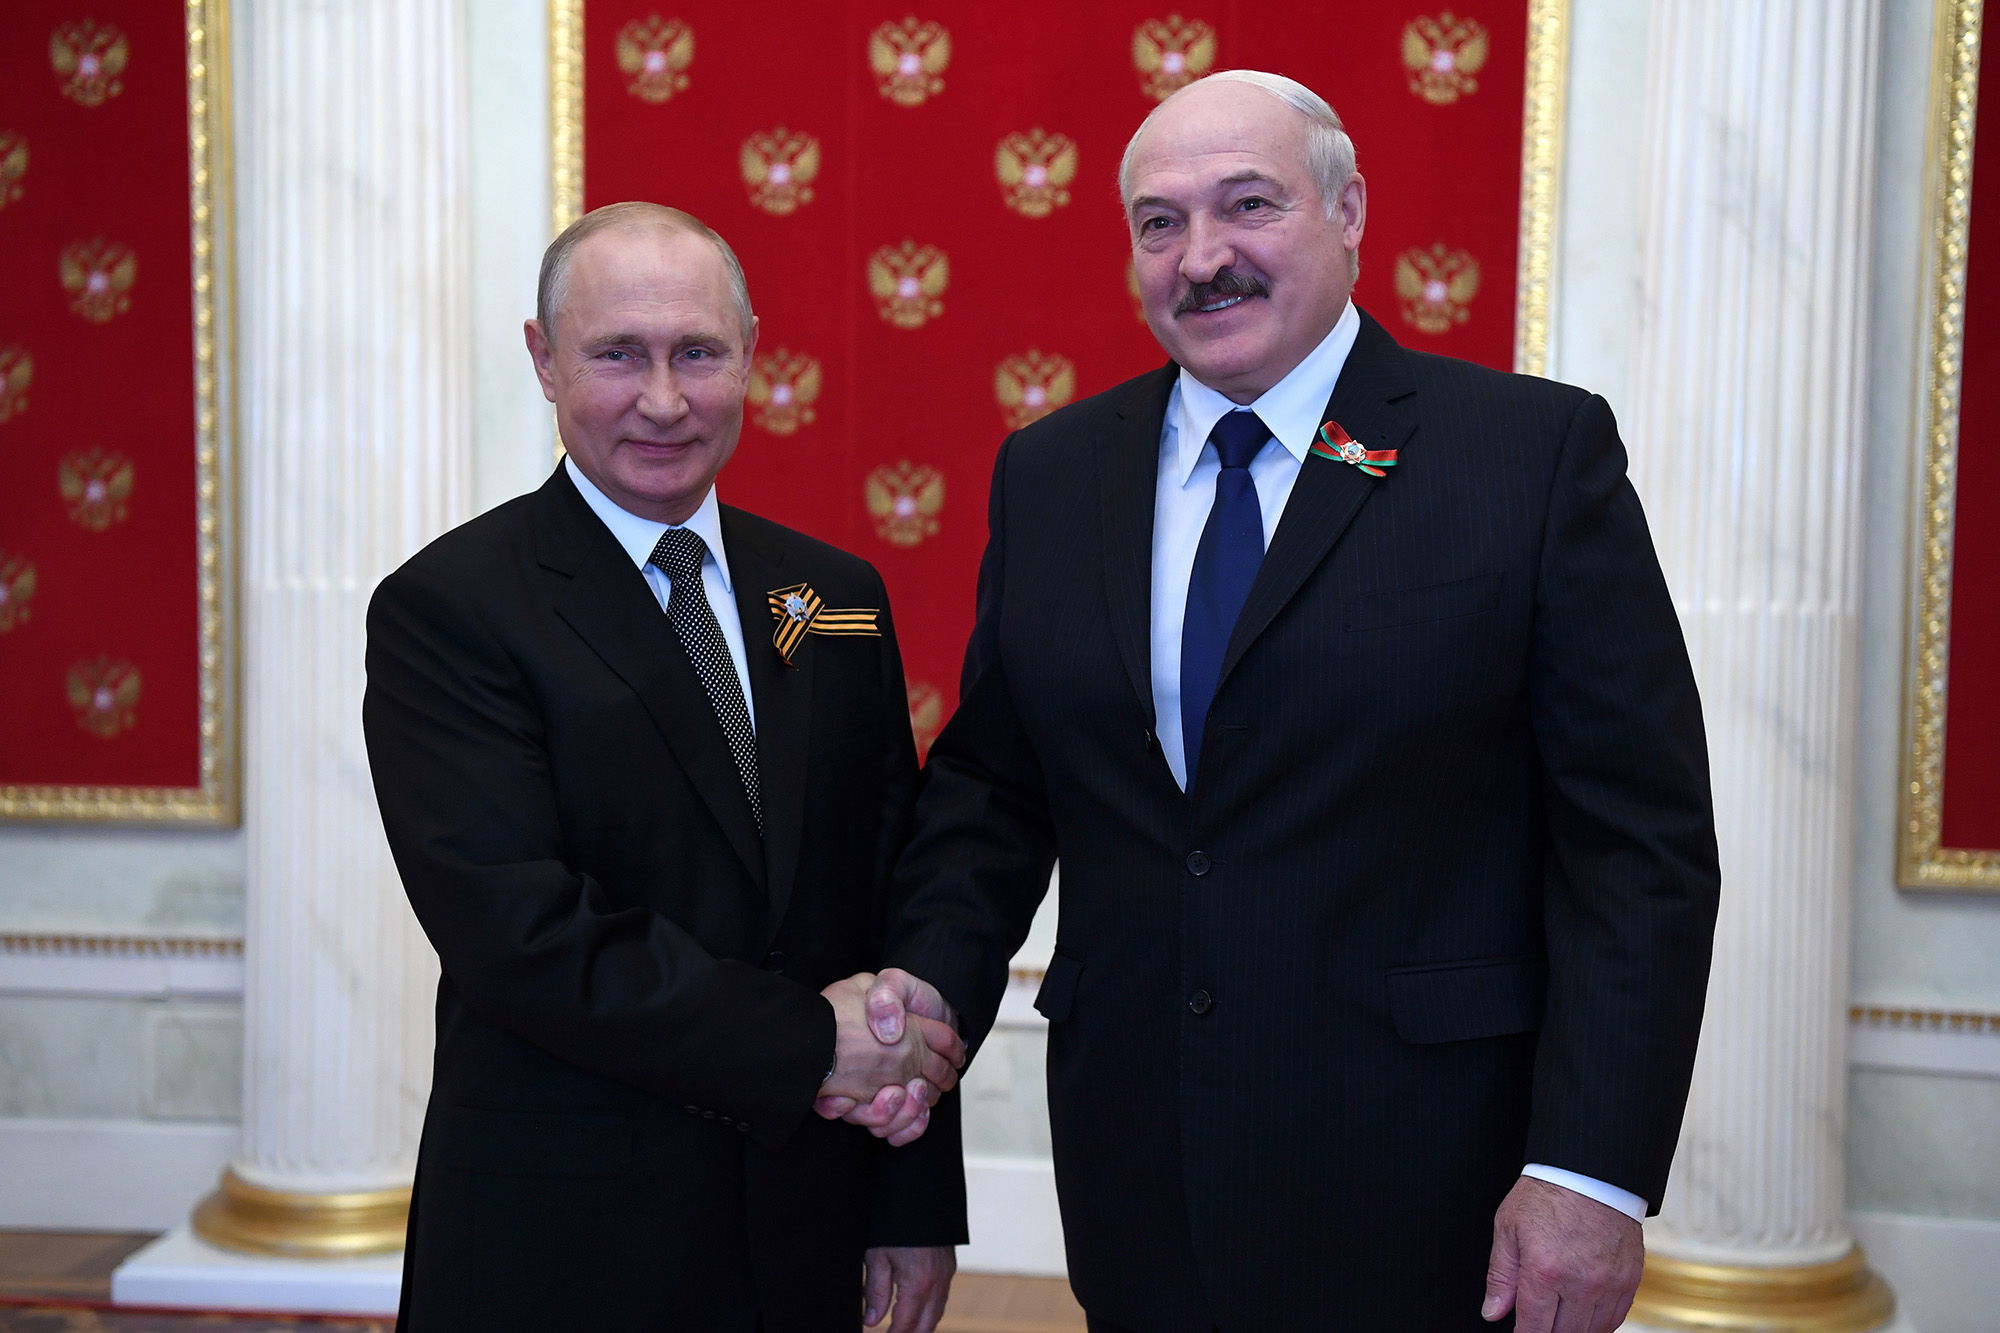 Podczas uroczystości, podczas której powstał nowy prom, Putin podał szczegóły rozmowy telefonicznej z przywódcą Białorusi i wspomniał o wyjściu na Bałtyk.